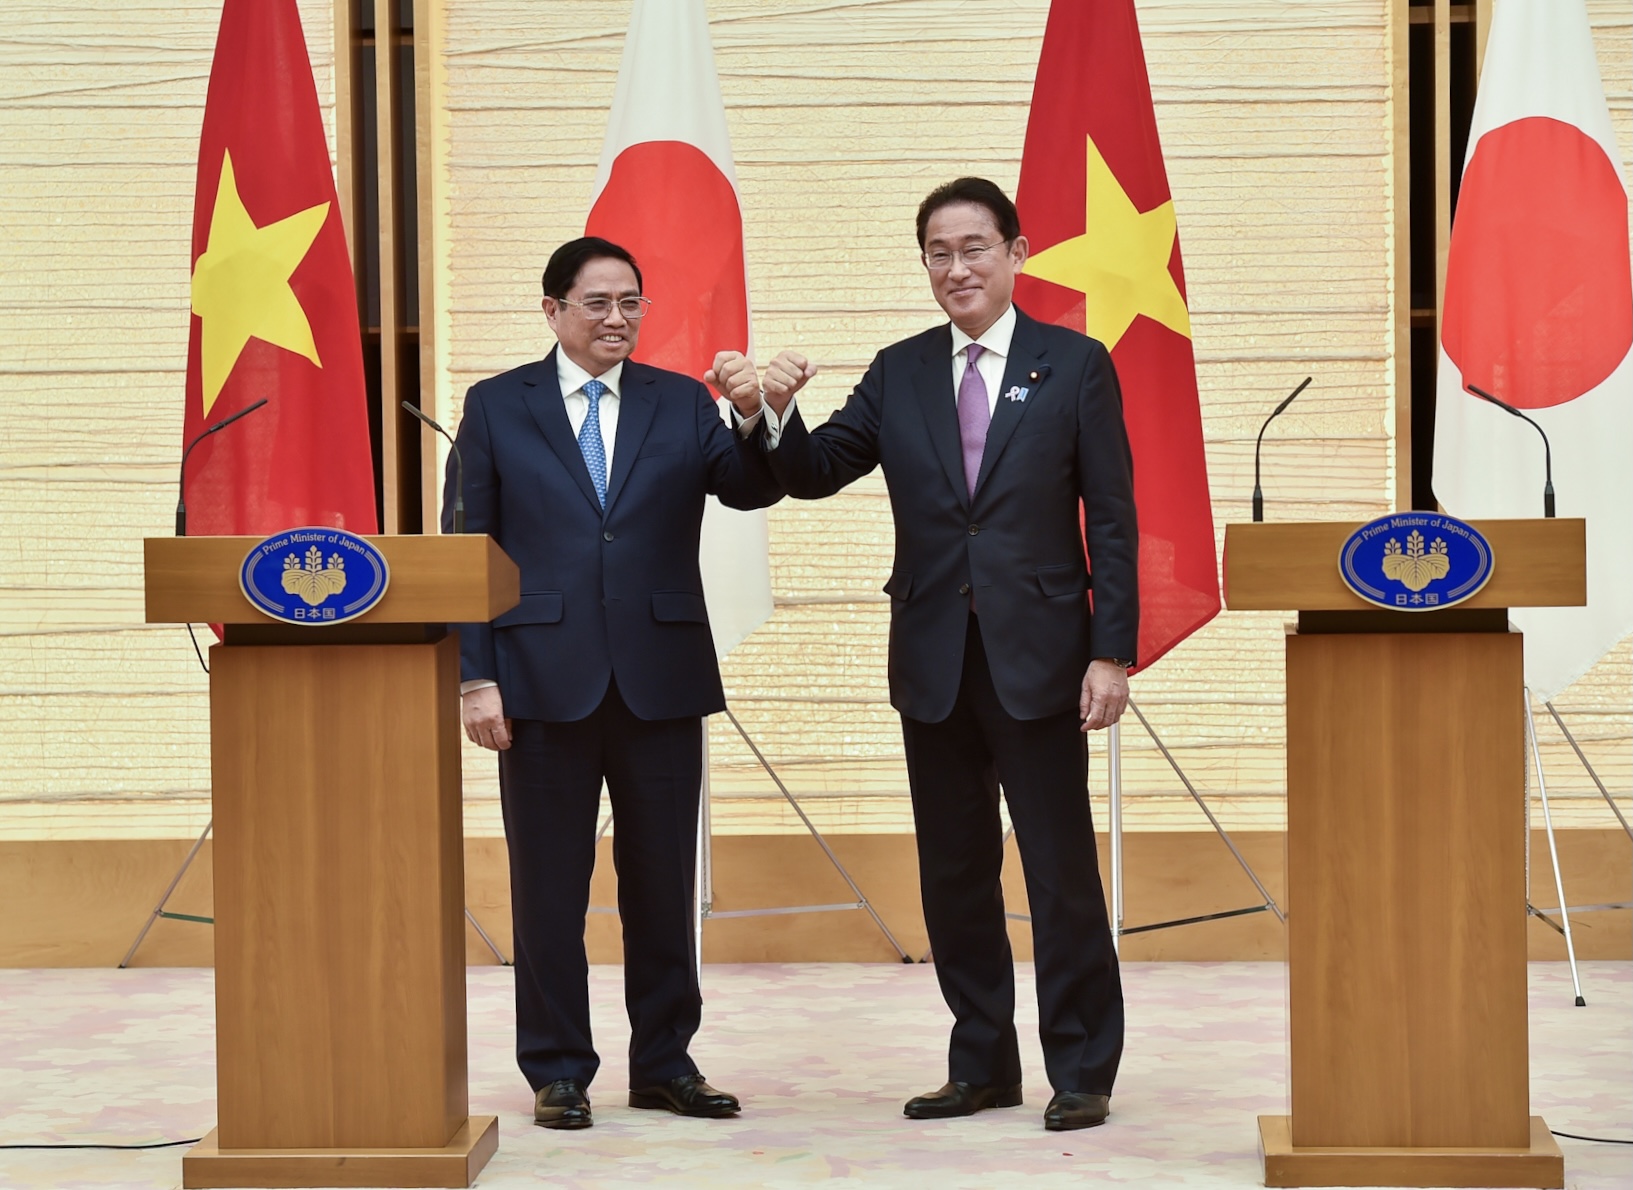 Tuyên bố chung Việt Nam - Nhật Bản: Tuyên bố chung giữa Việt Nam và Nhật Bản đã tạo được sự đồng tình và hợp tác trong nhiều lĩnh vực, đưa quan hệ giữa hai nước lên một tầm cao mới. Việt Nam và Nhật Bản đang tìm cách thúc đẩy quan hệ kinh tế, đầu tư và hợp tác trong nhiều lĩnh vực khác.